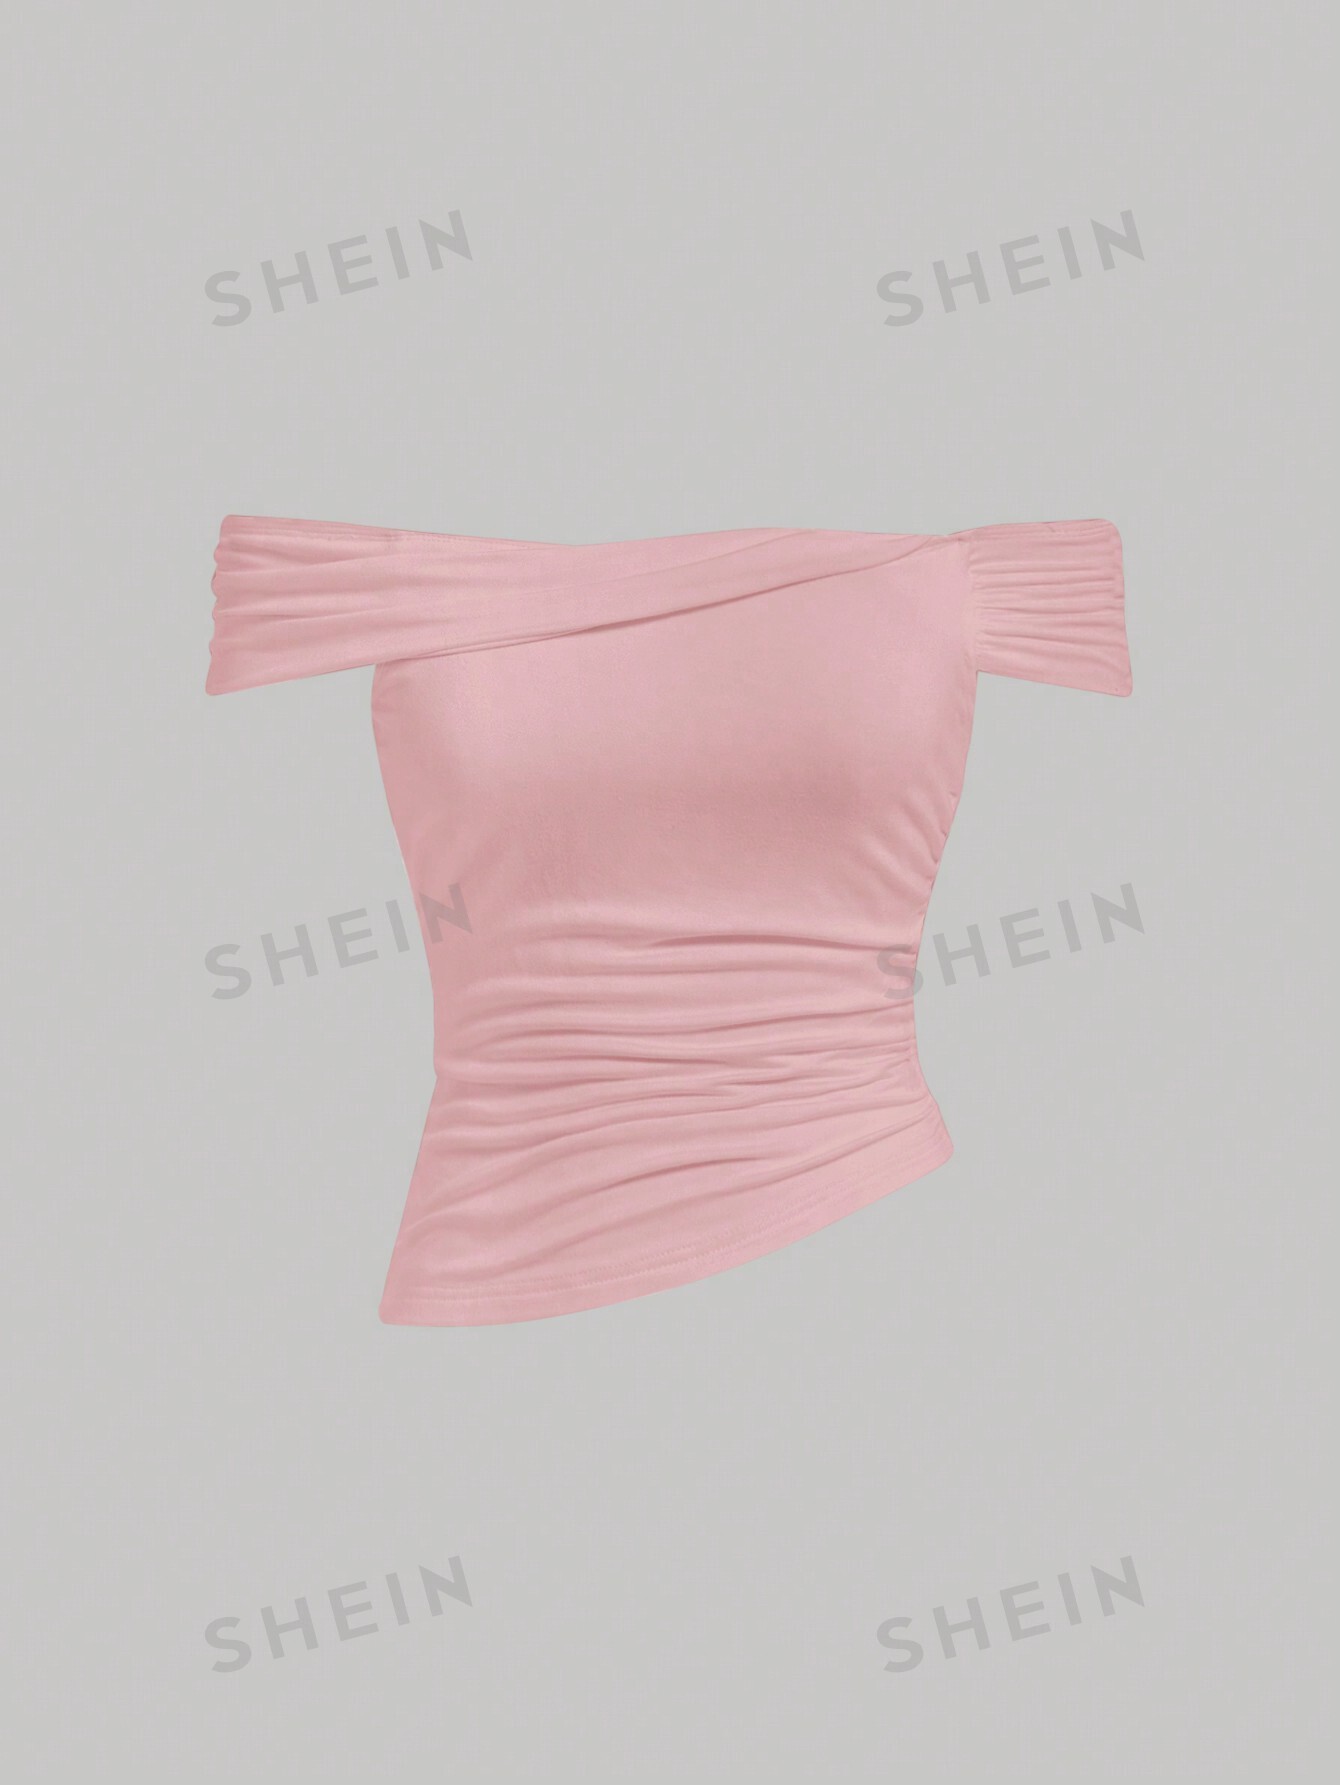 SHEIN MOD однотонный облегающий топ с открытыми плечами, розовый топ женский белый